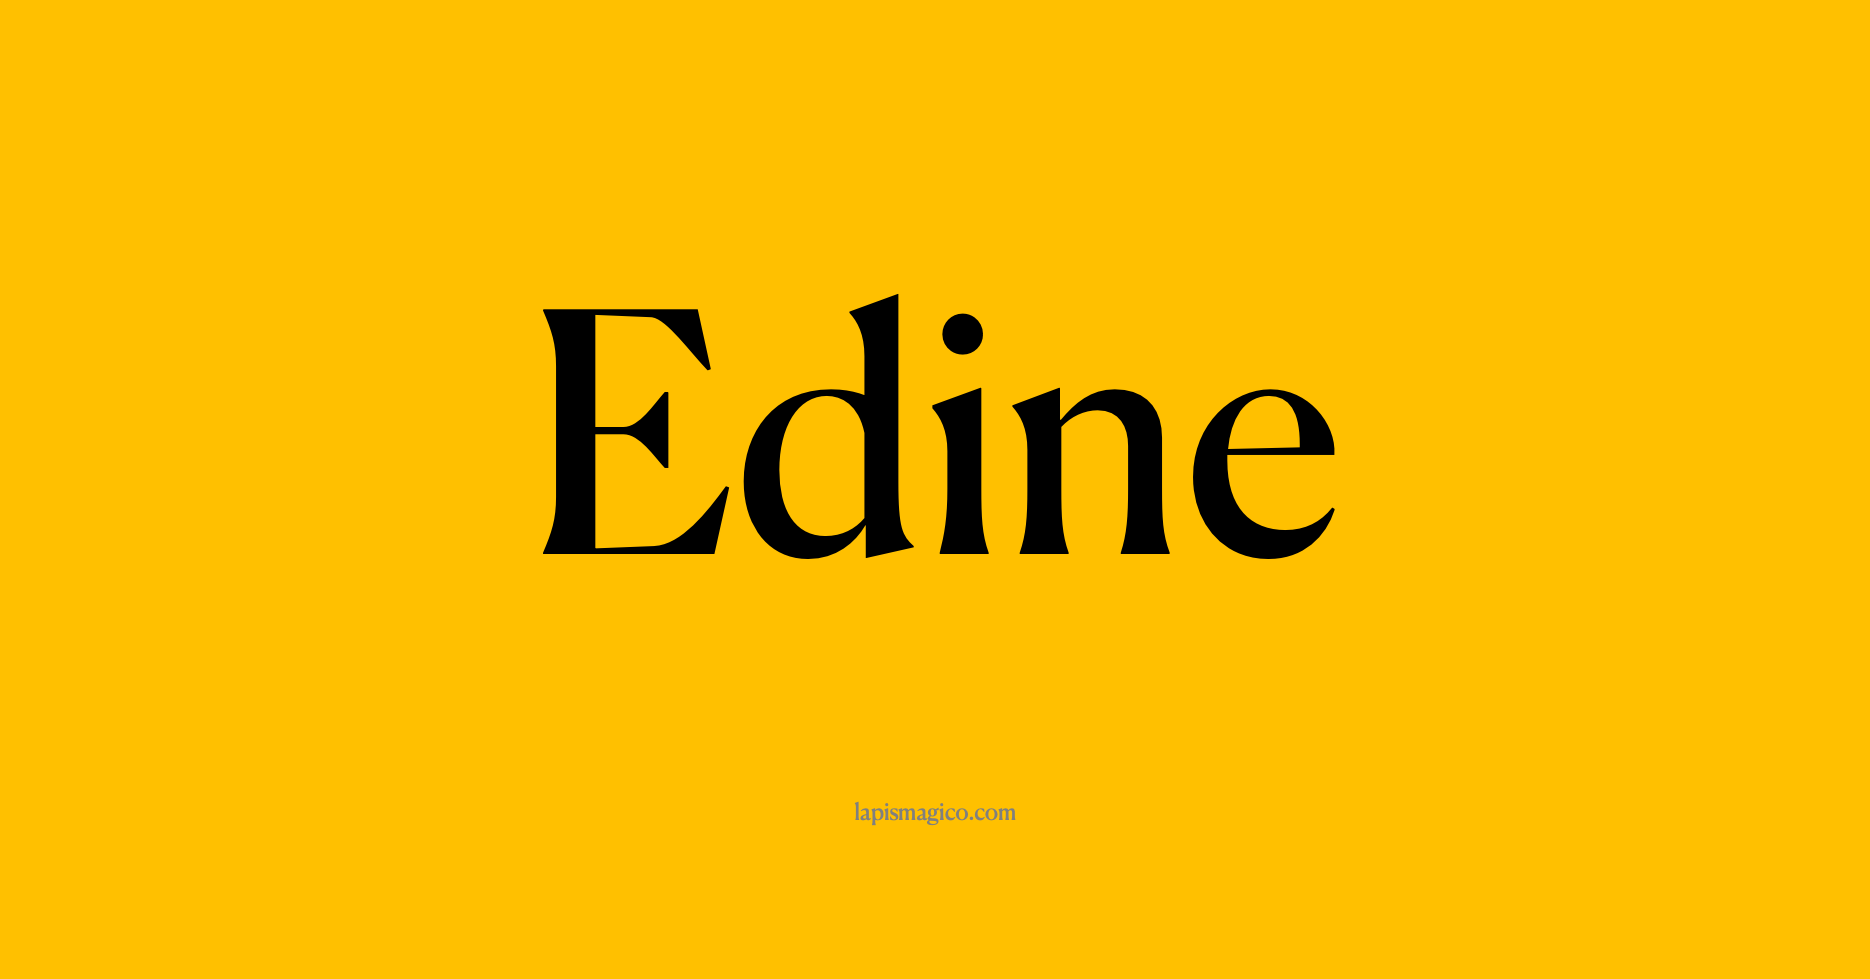 Nome Edine